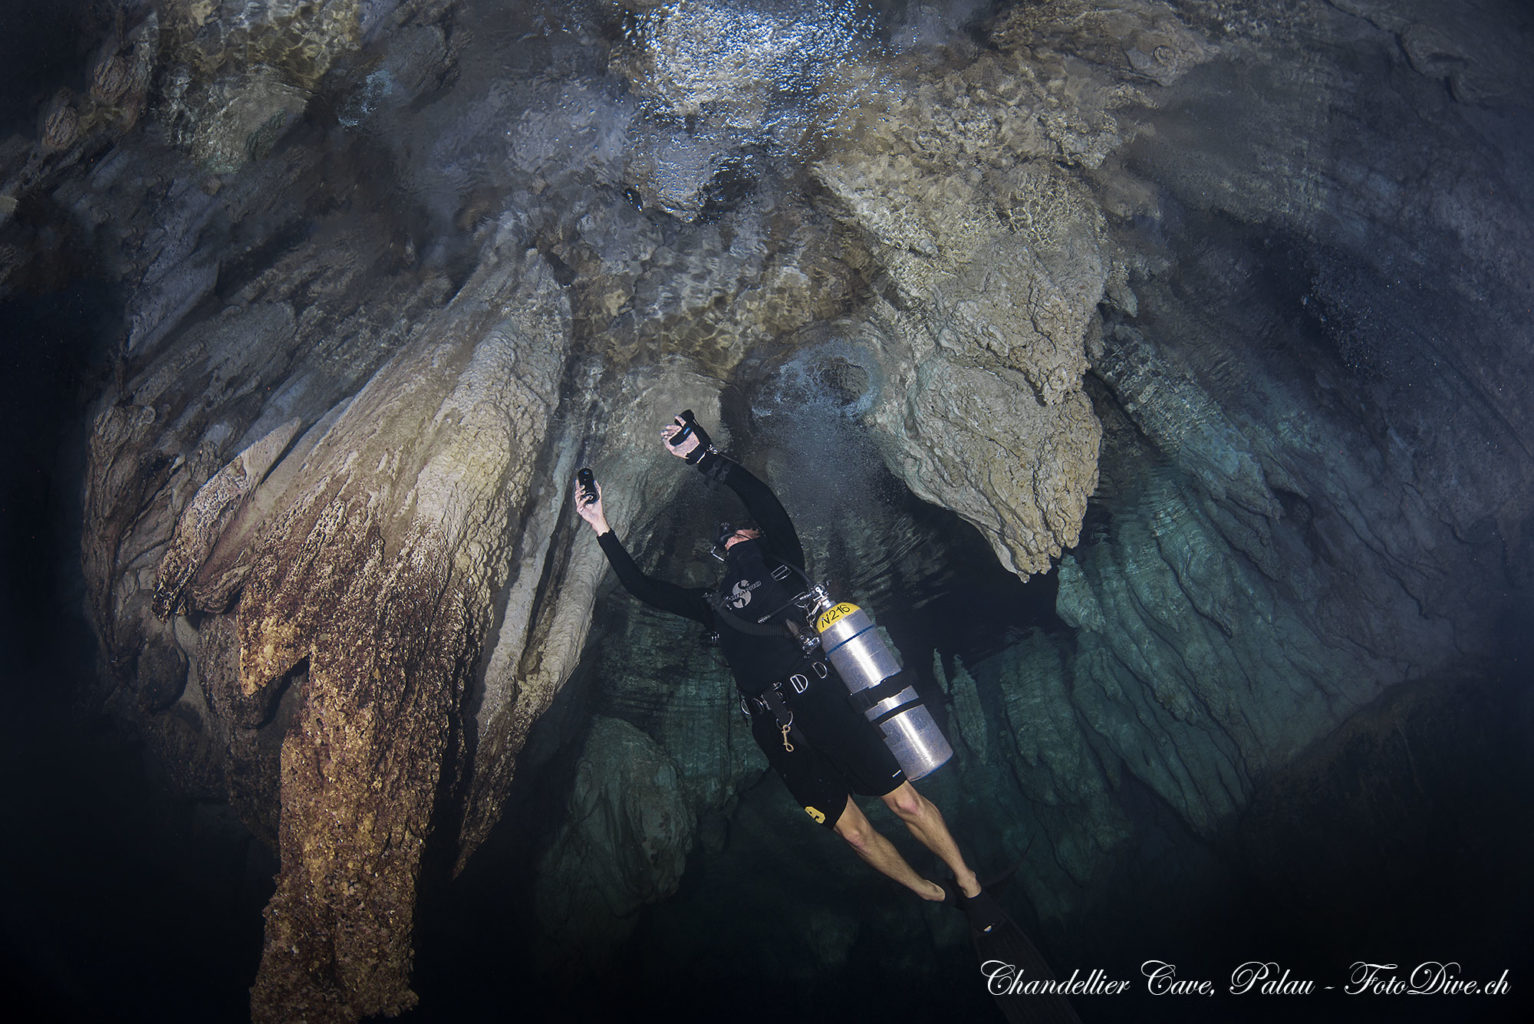 Chandelier Cave - Palau